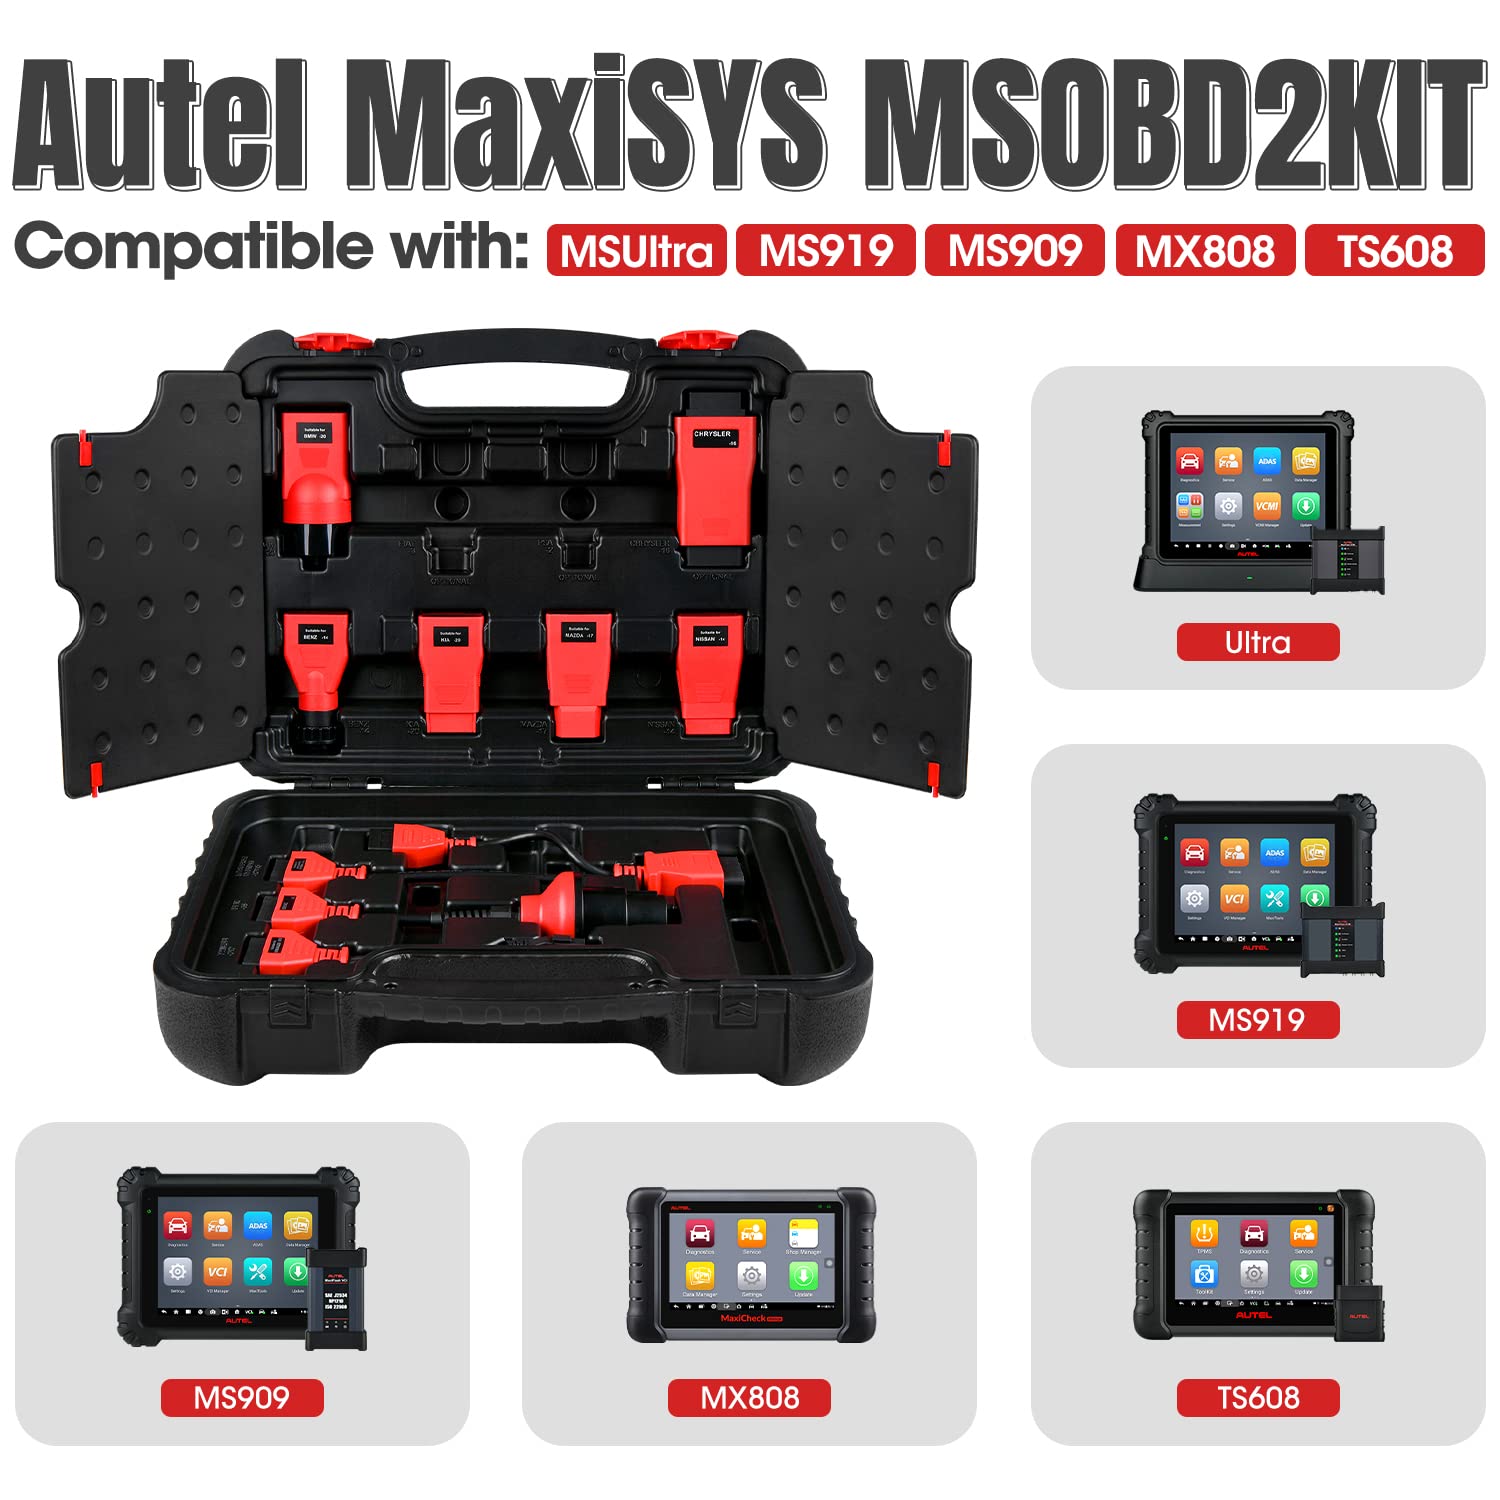 مجموعة محول Autel MSOBD2KIT Non-OBDII متوافقة مع الماسح MSUltra و MS919 و MS909 و TS608 و MX808